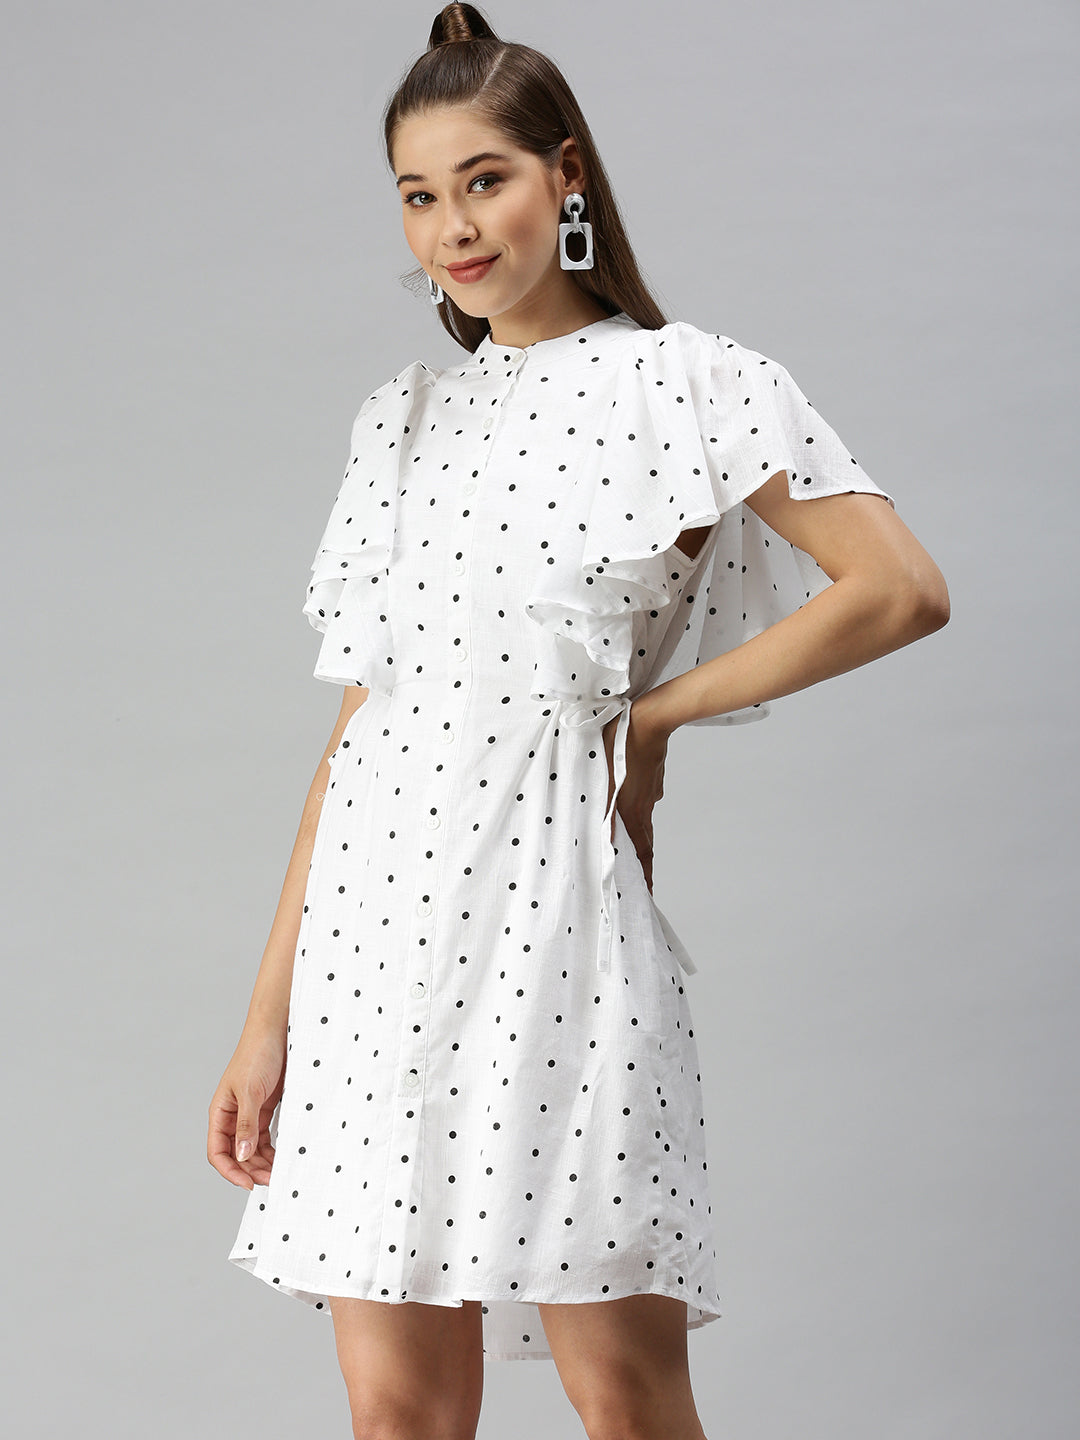 Women's White Printed Shirt Dress